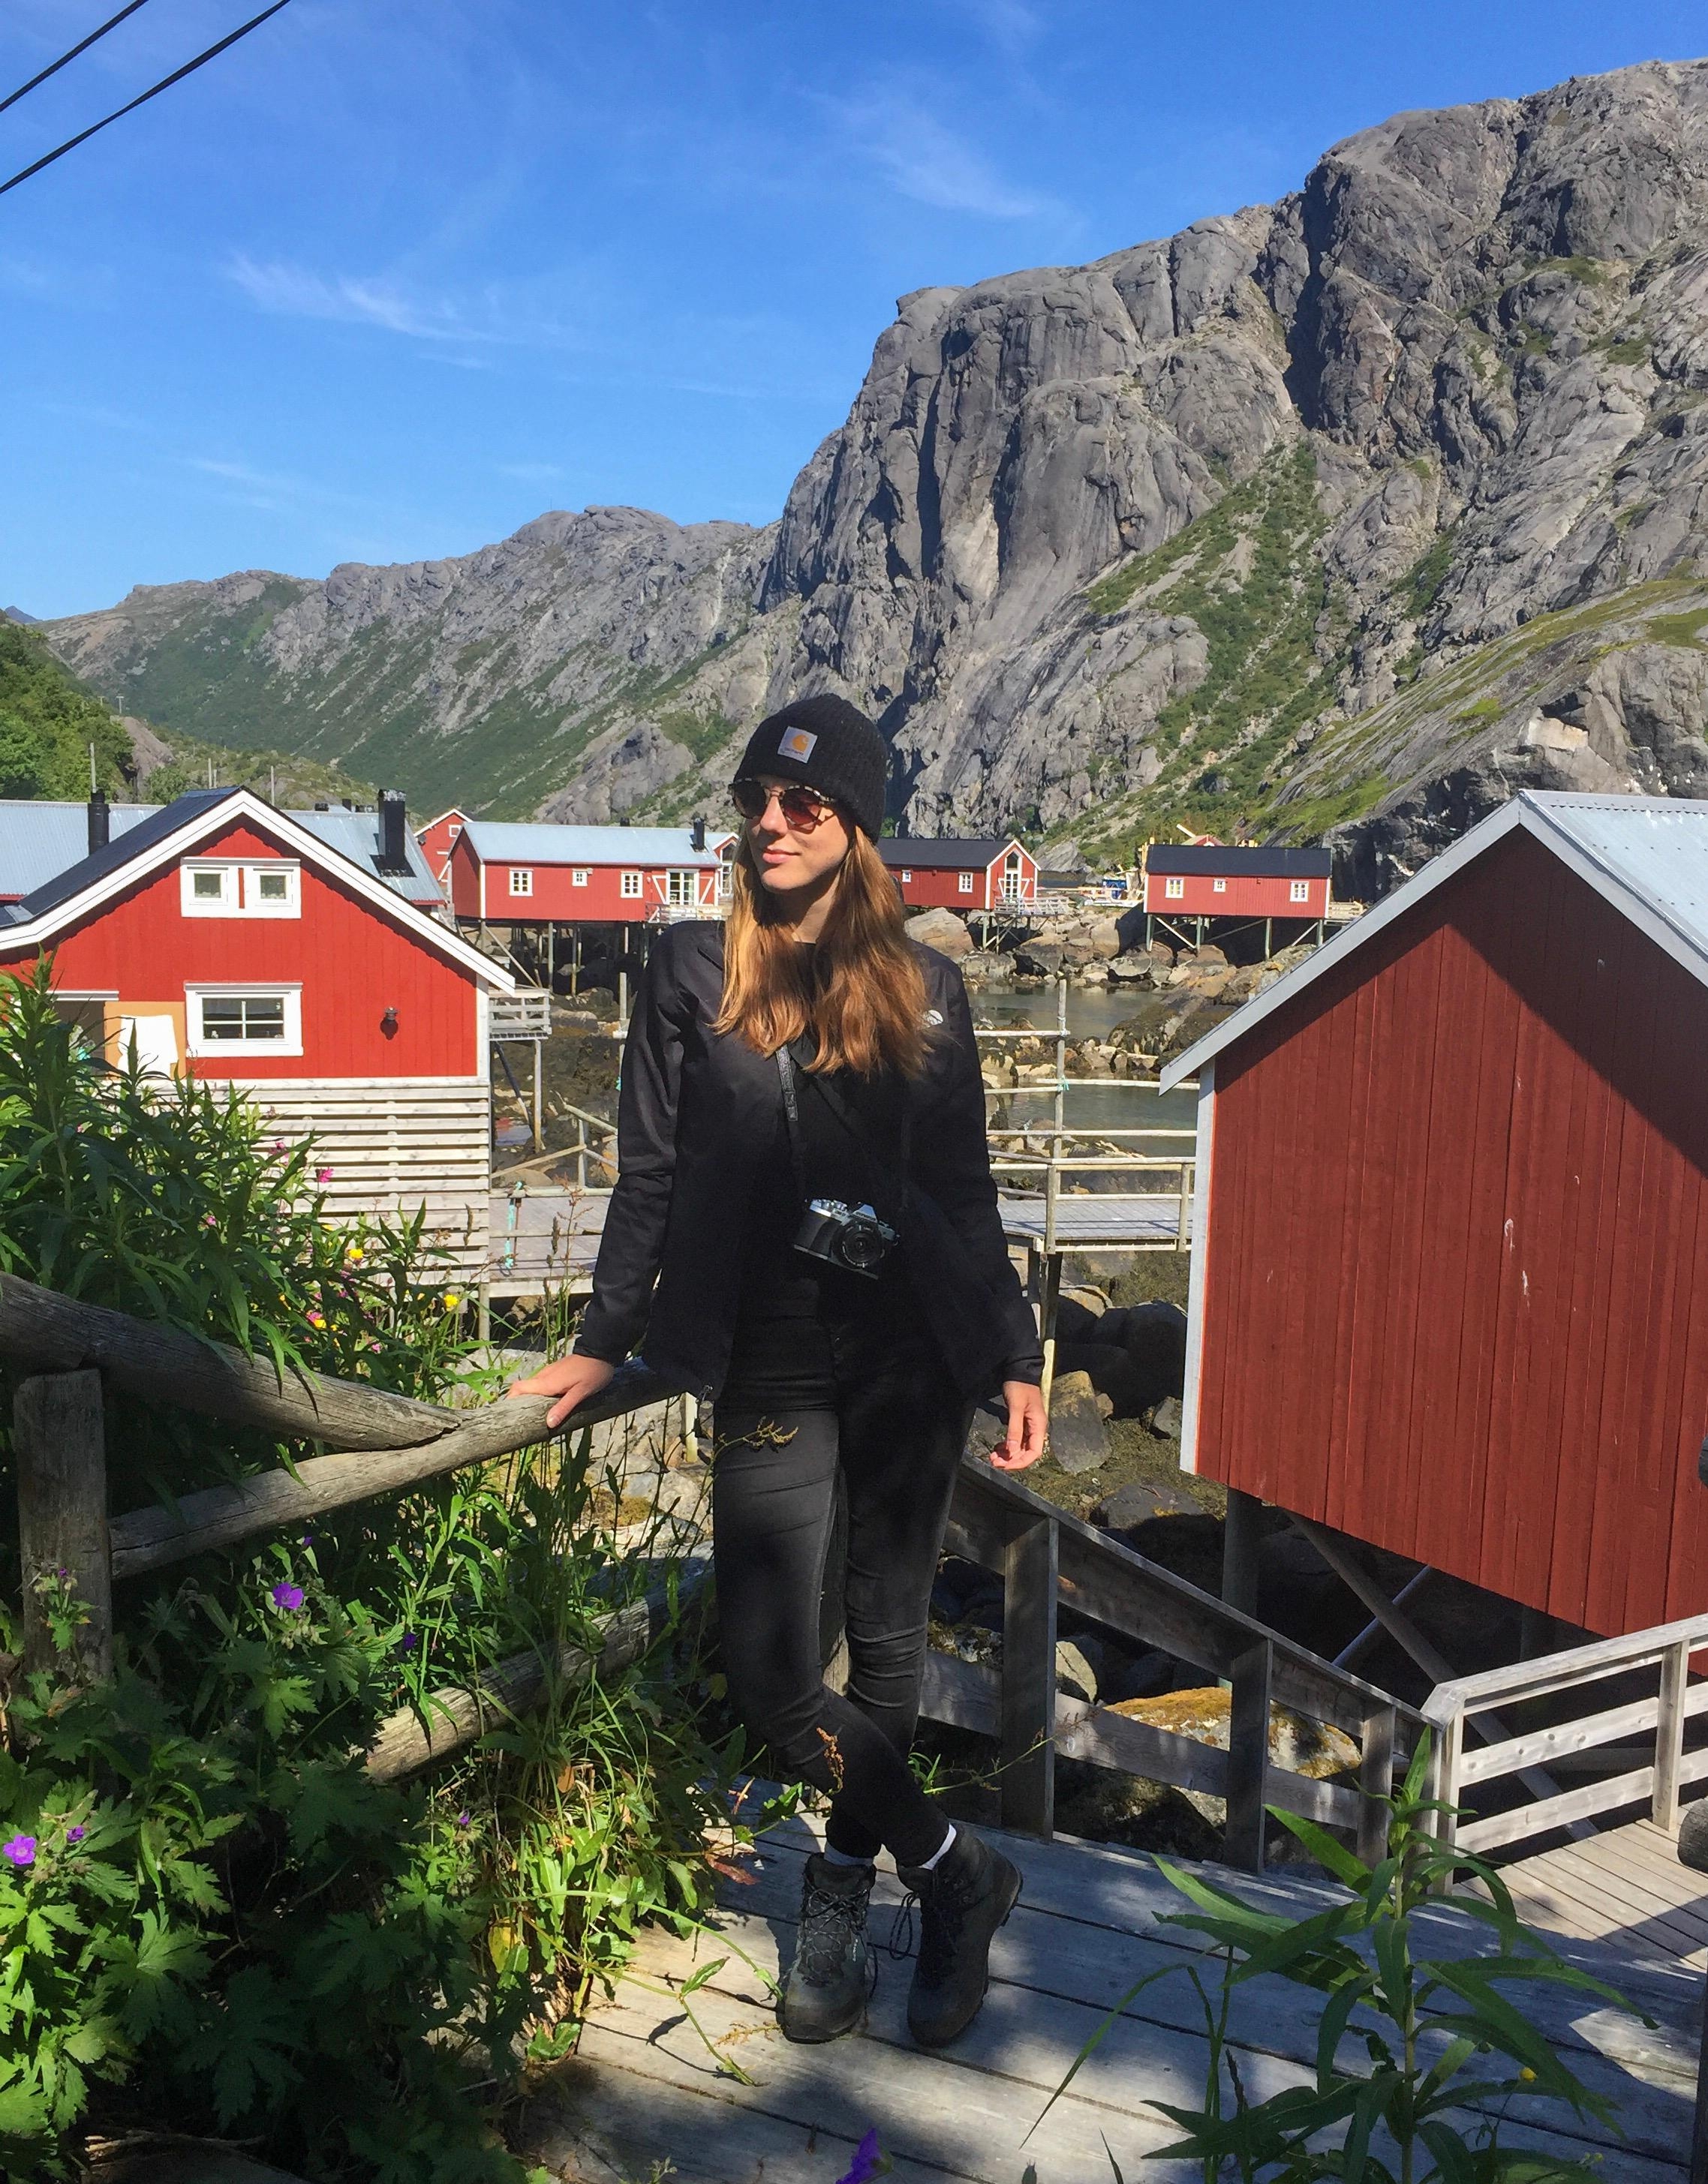 🇳🇴 Wir machen gerade einen Roadtrip durch Norwegen. Mein Highlight bis jetzt: Die Lofoten #urlaub #travel #norwegen  